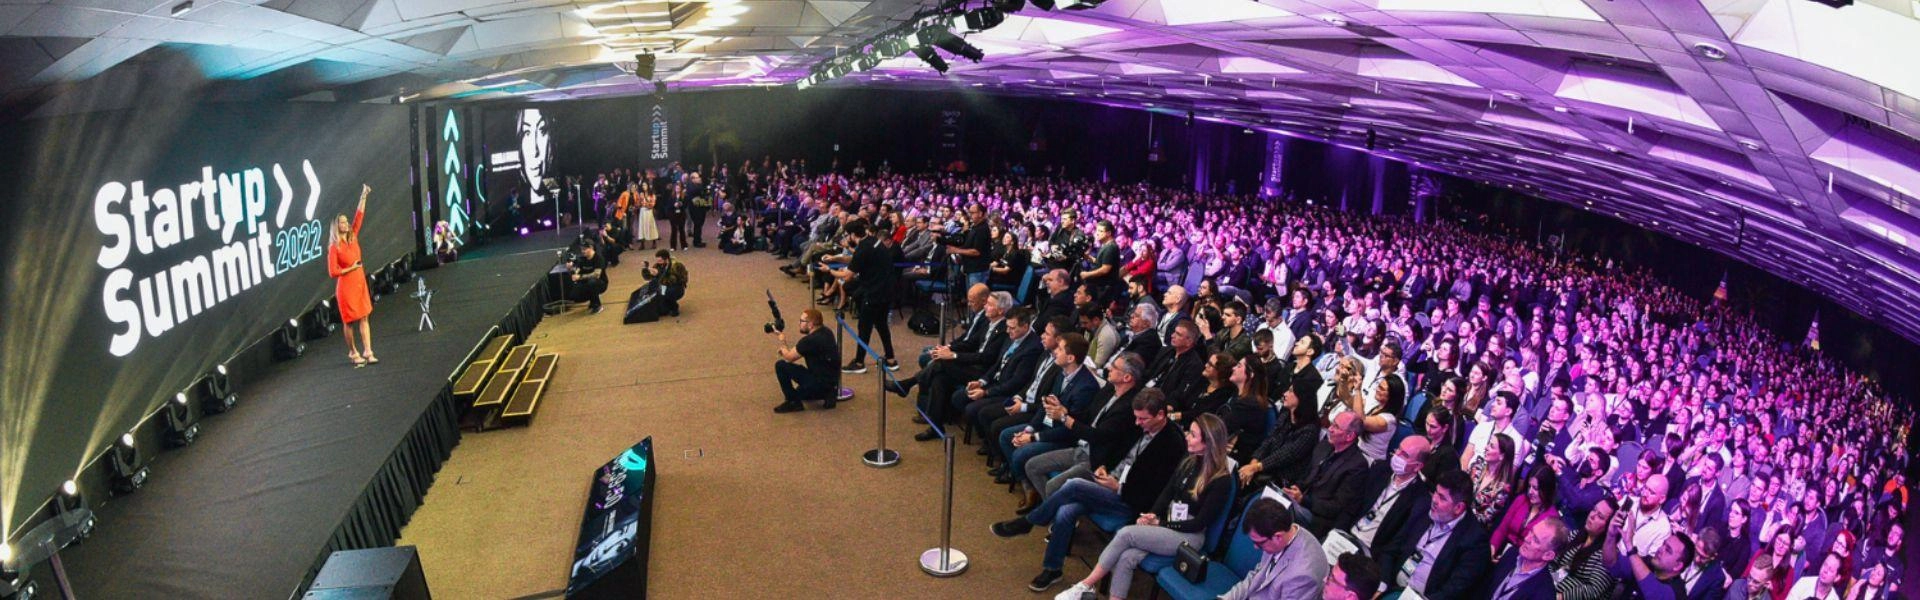 Palco de apresentação do Startup Summit e diversos participantes na plateia.